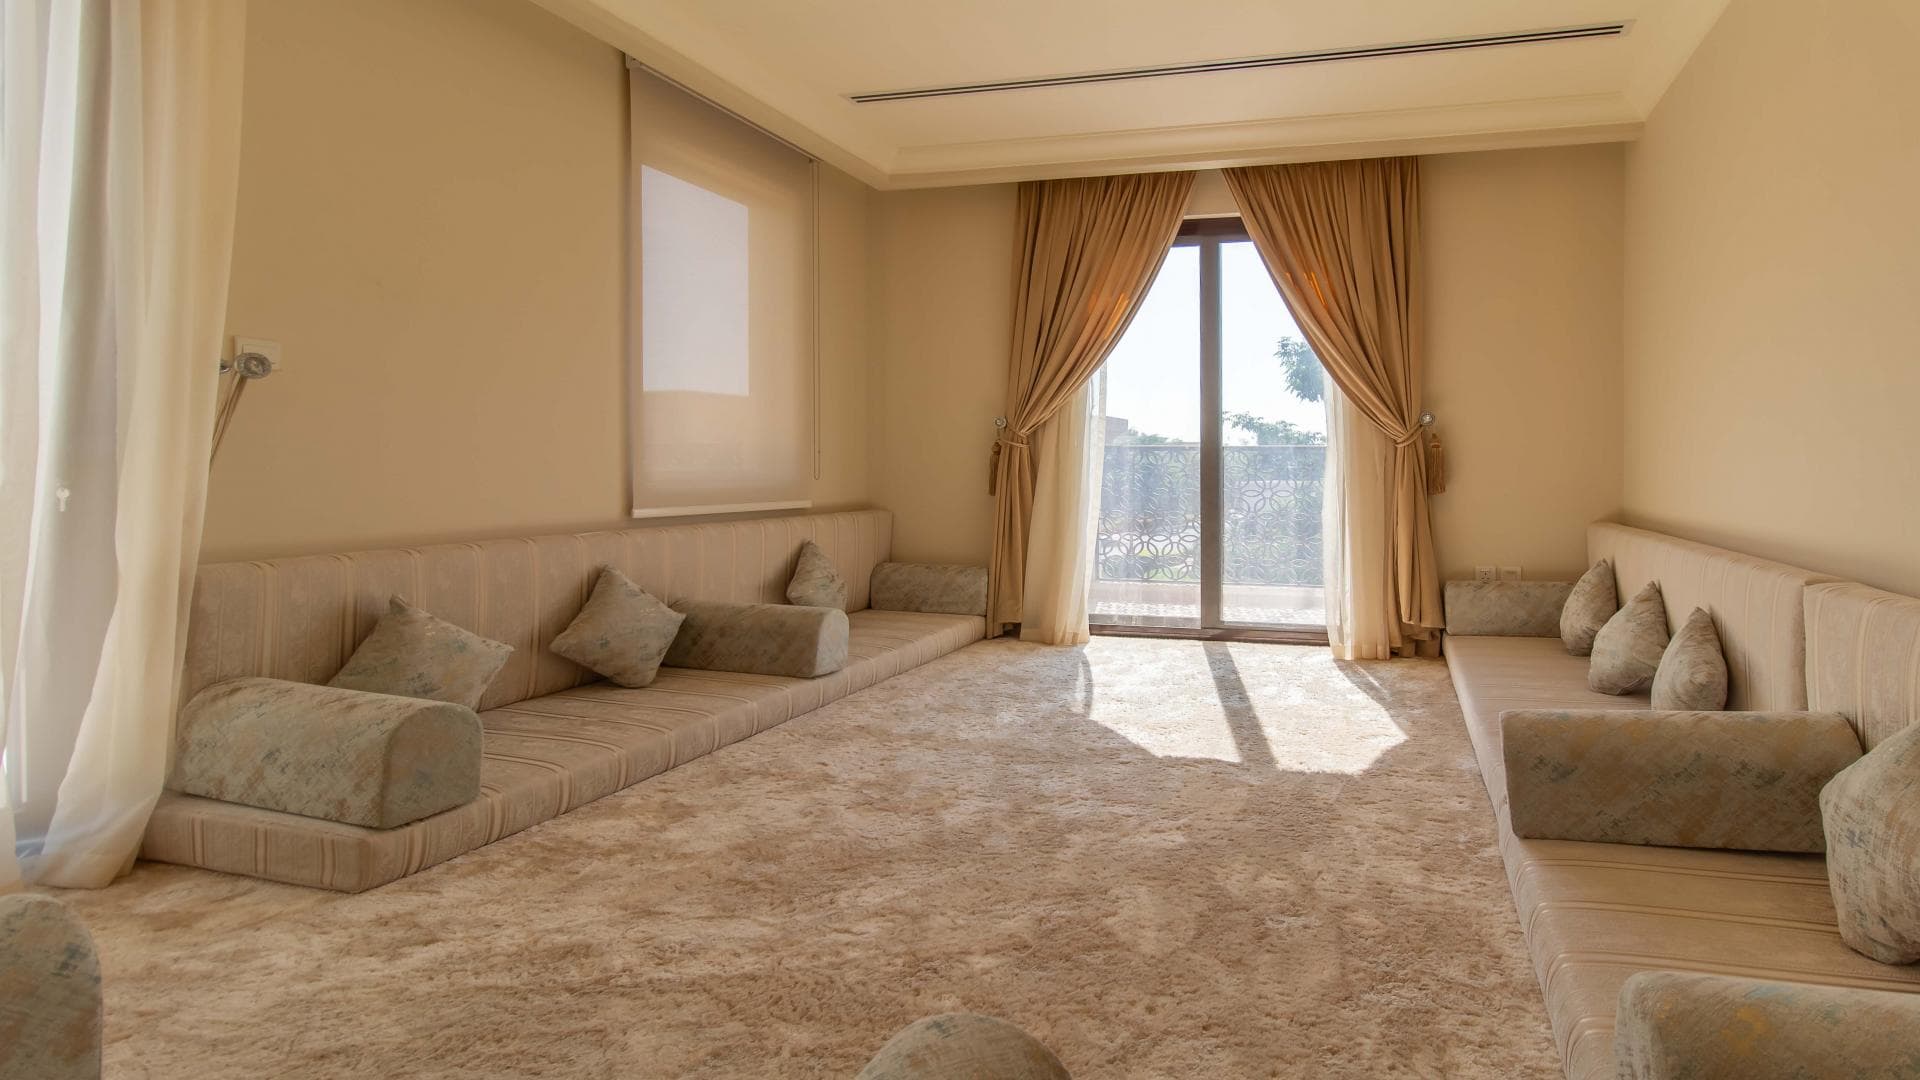 5 Bedroom Villa For Rent Al Bateen Residence Lp27831 1c84942fffba2c00.jpg